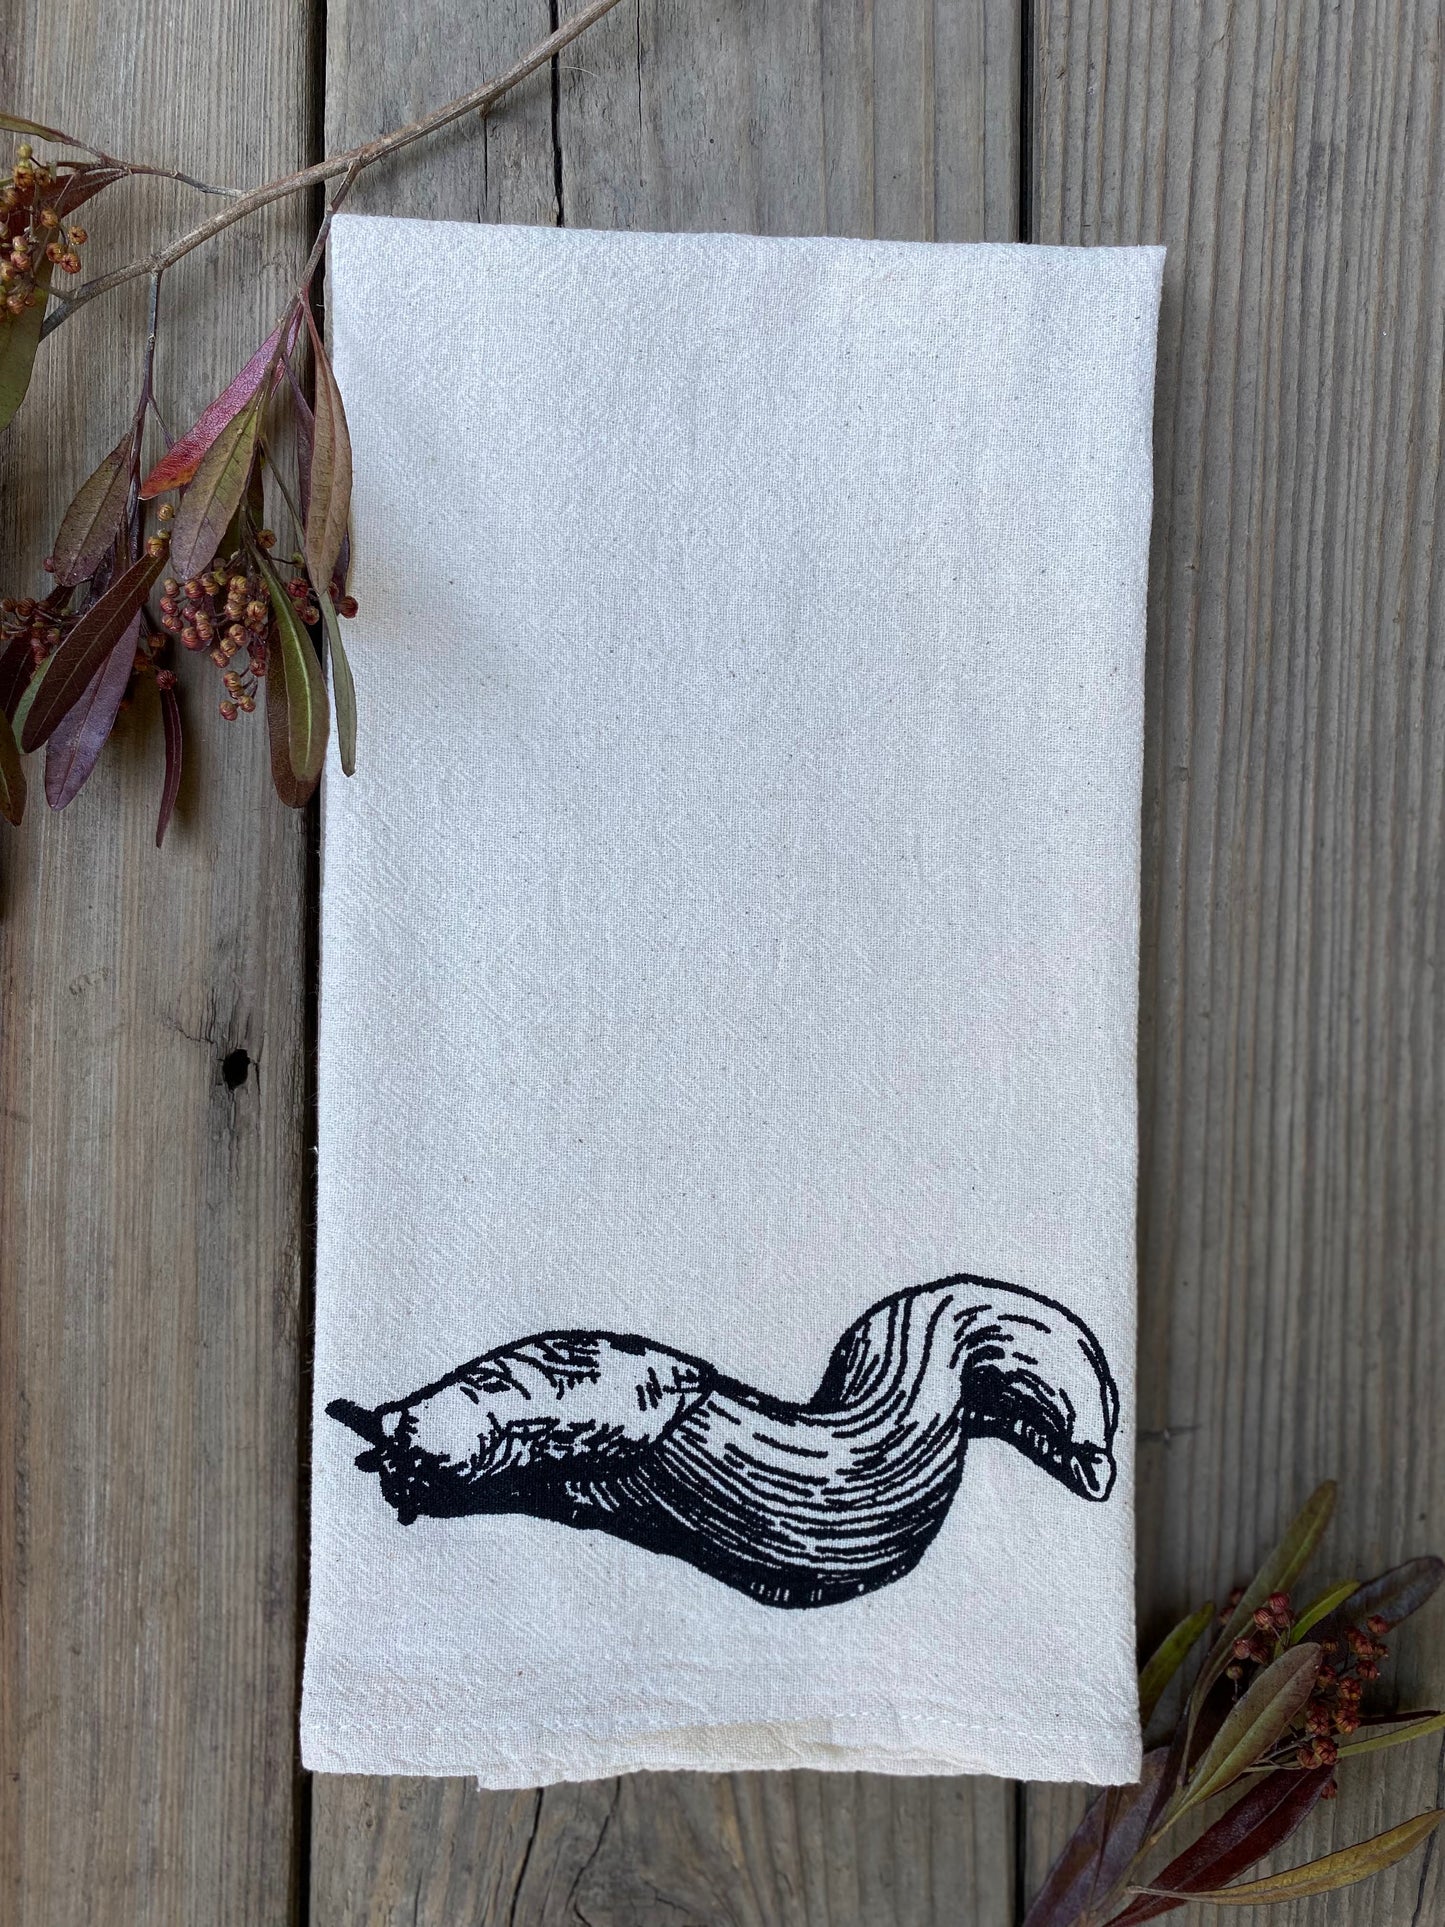 Banana slug tea towel